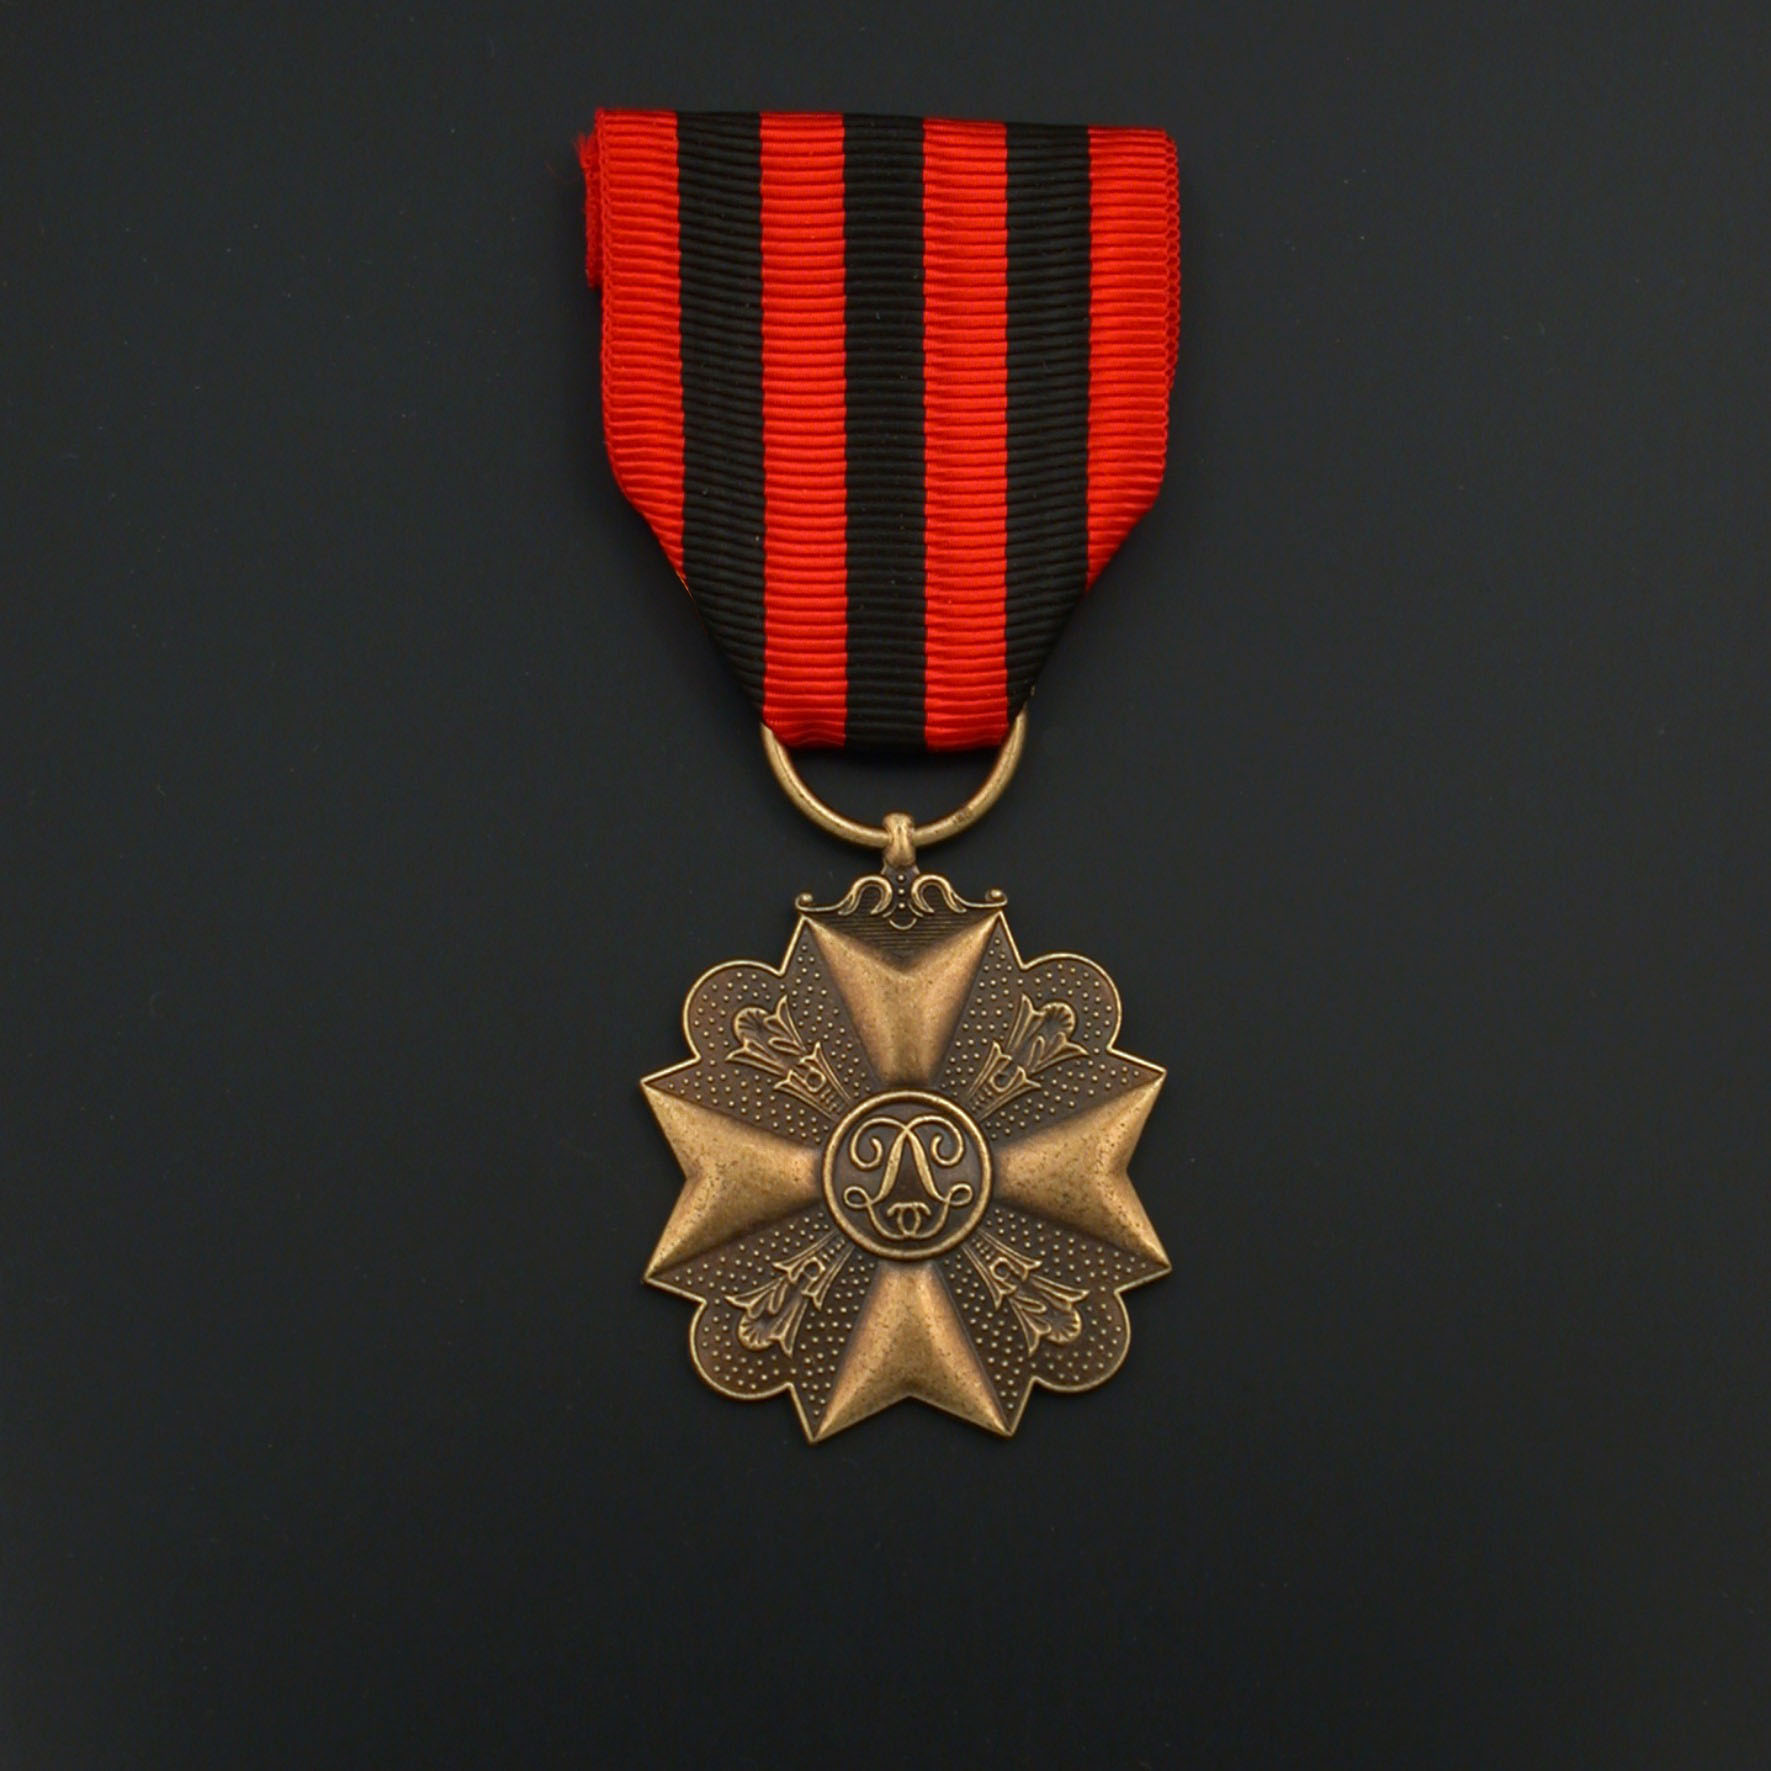 officieel-burgerlijk-ereteken-medaille-3e-klasse-01-01-06-burgerlijk-burgerlijke-medaille-3e-klasse-officieel-model.jpg